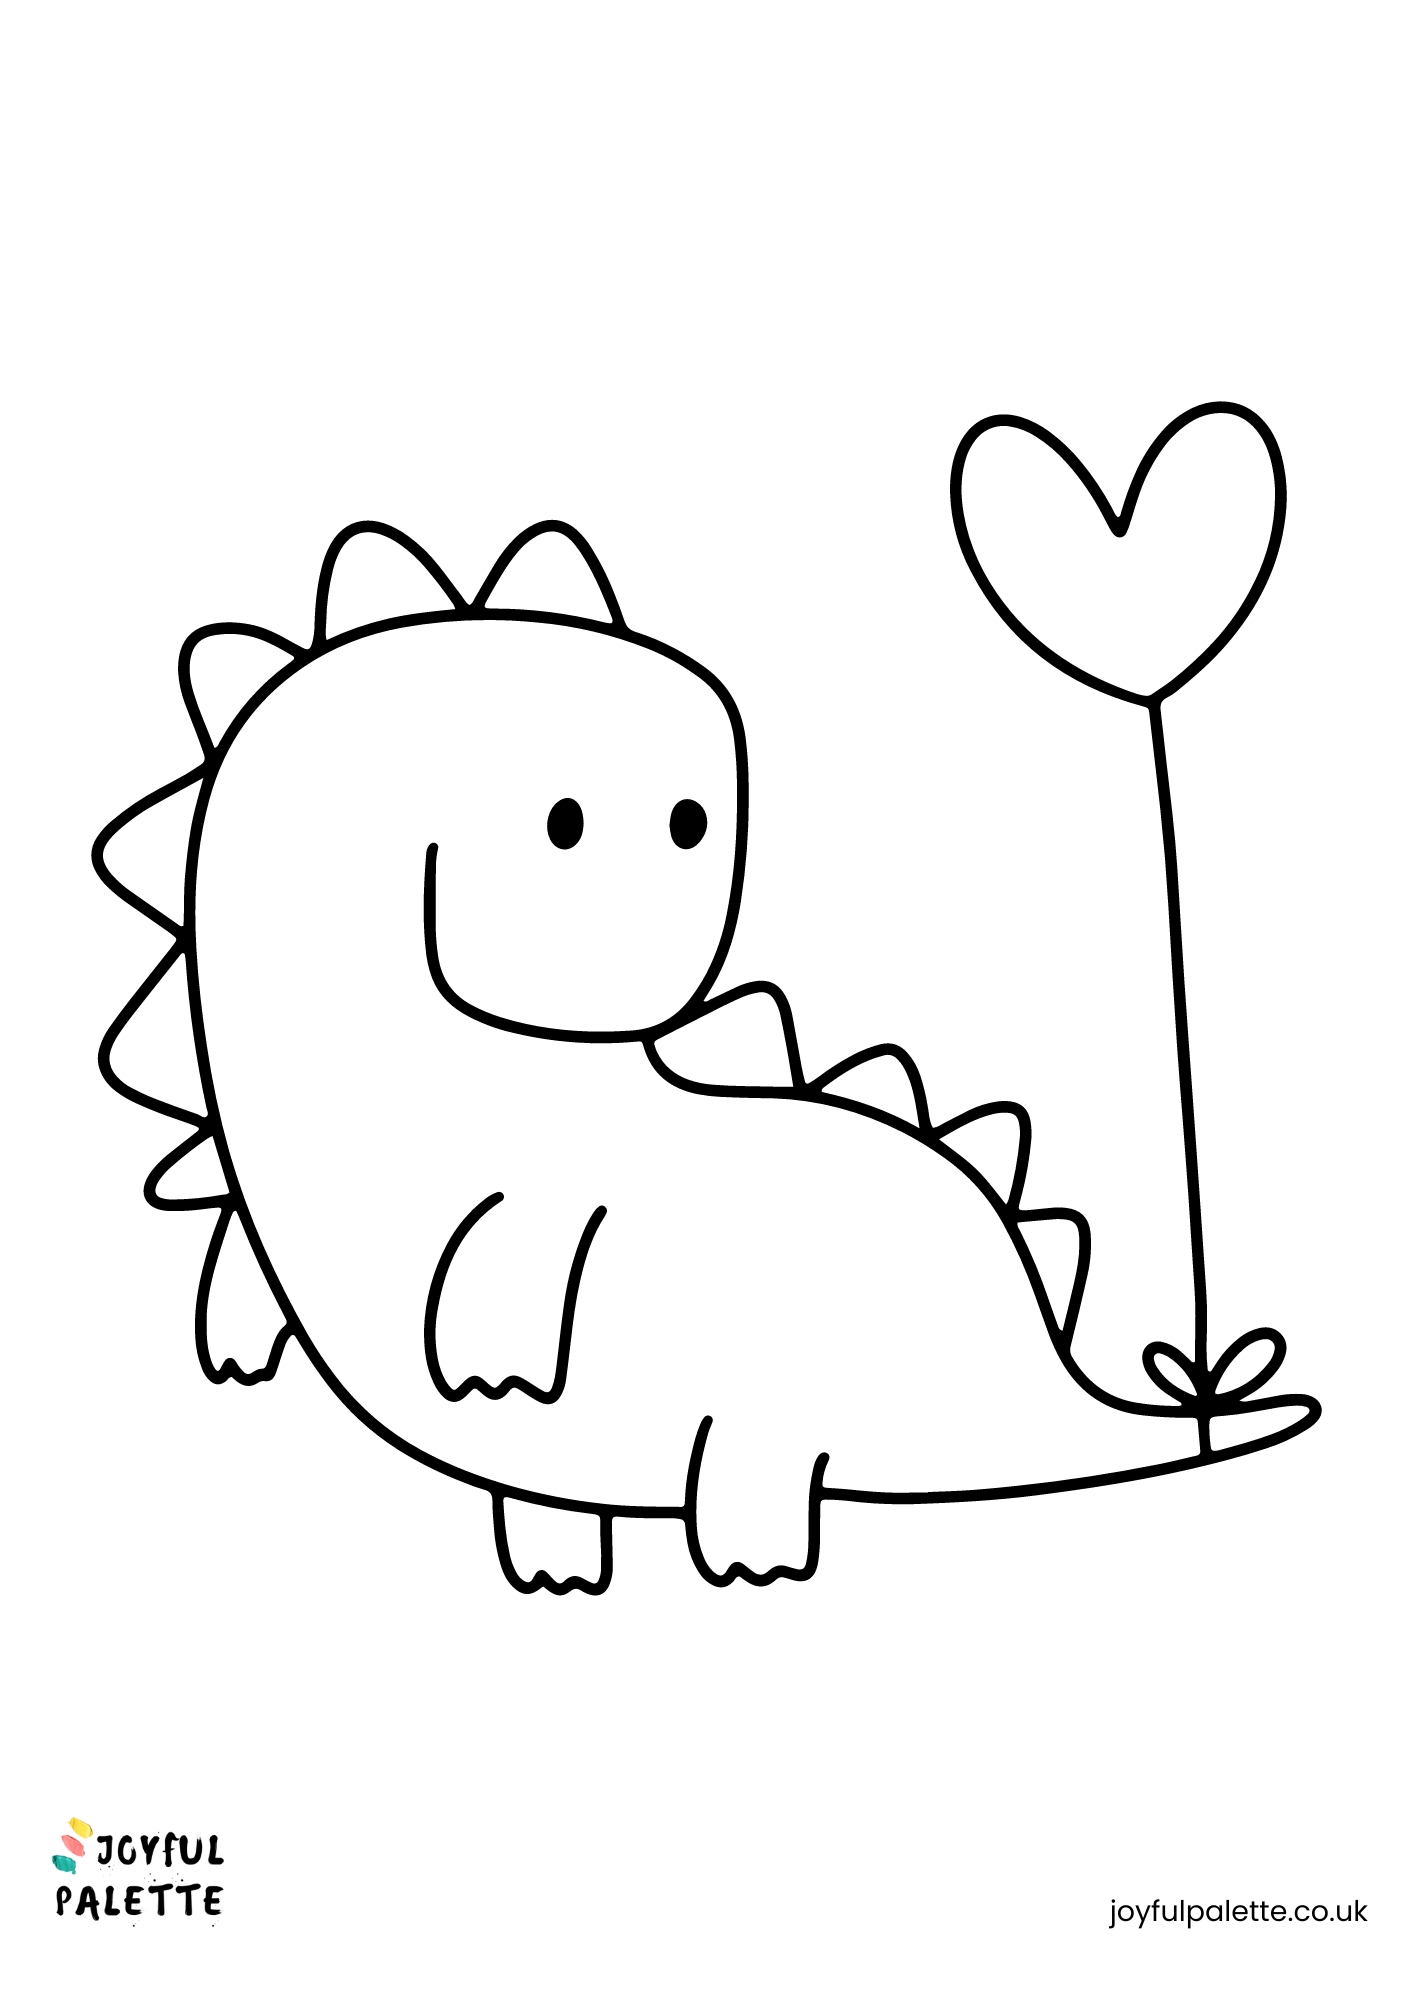 super kawaii cute dinosaur coloring page